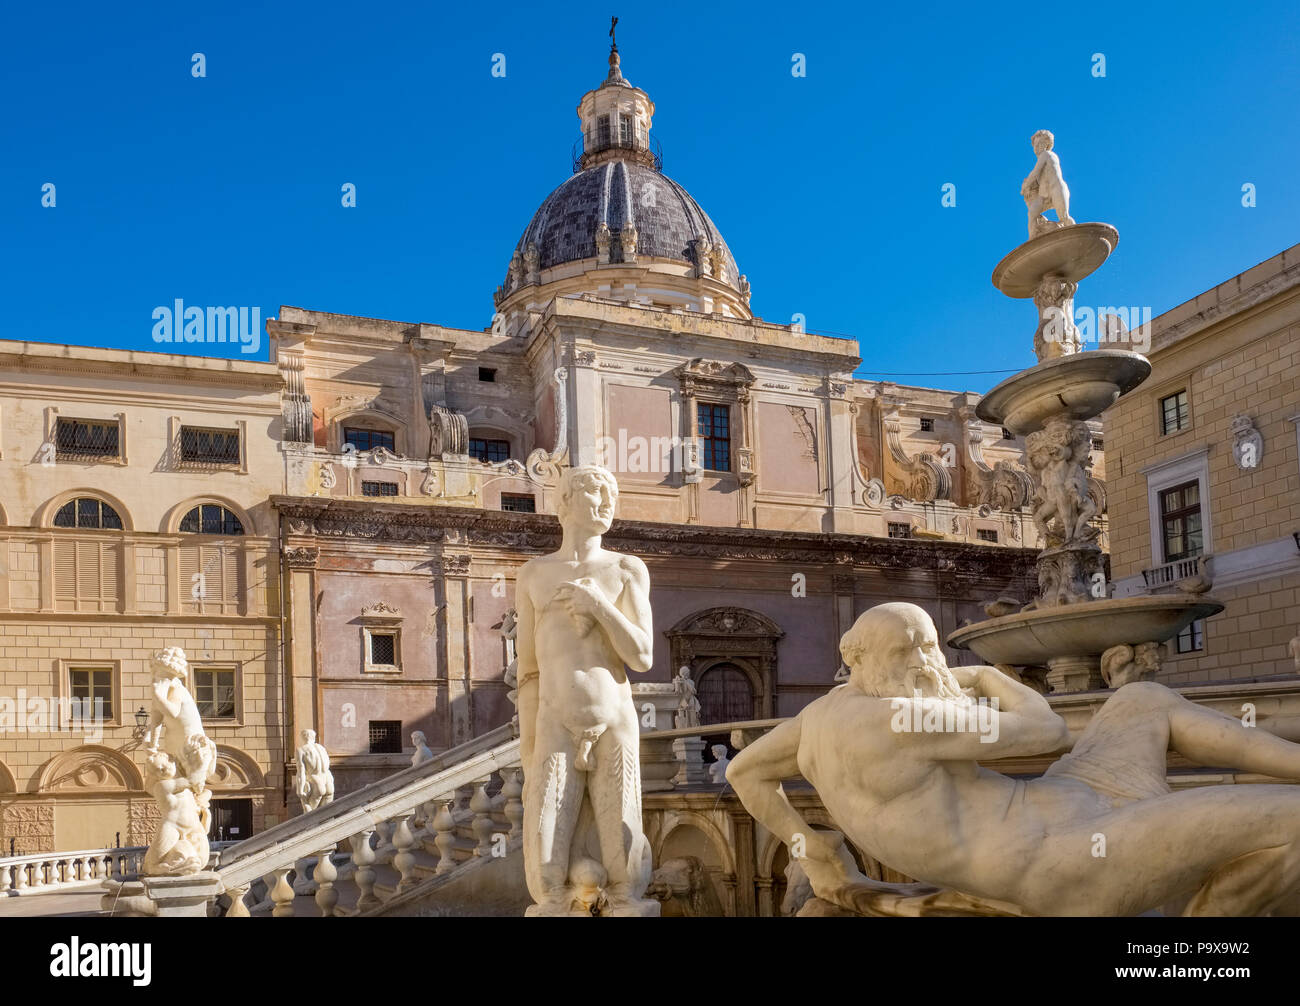 La Fontana Pretoria, Praetorian fontana di Piazza Pretoria a Palermo, Sicilia, Italia, Europa Foto Stock